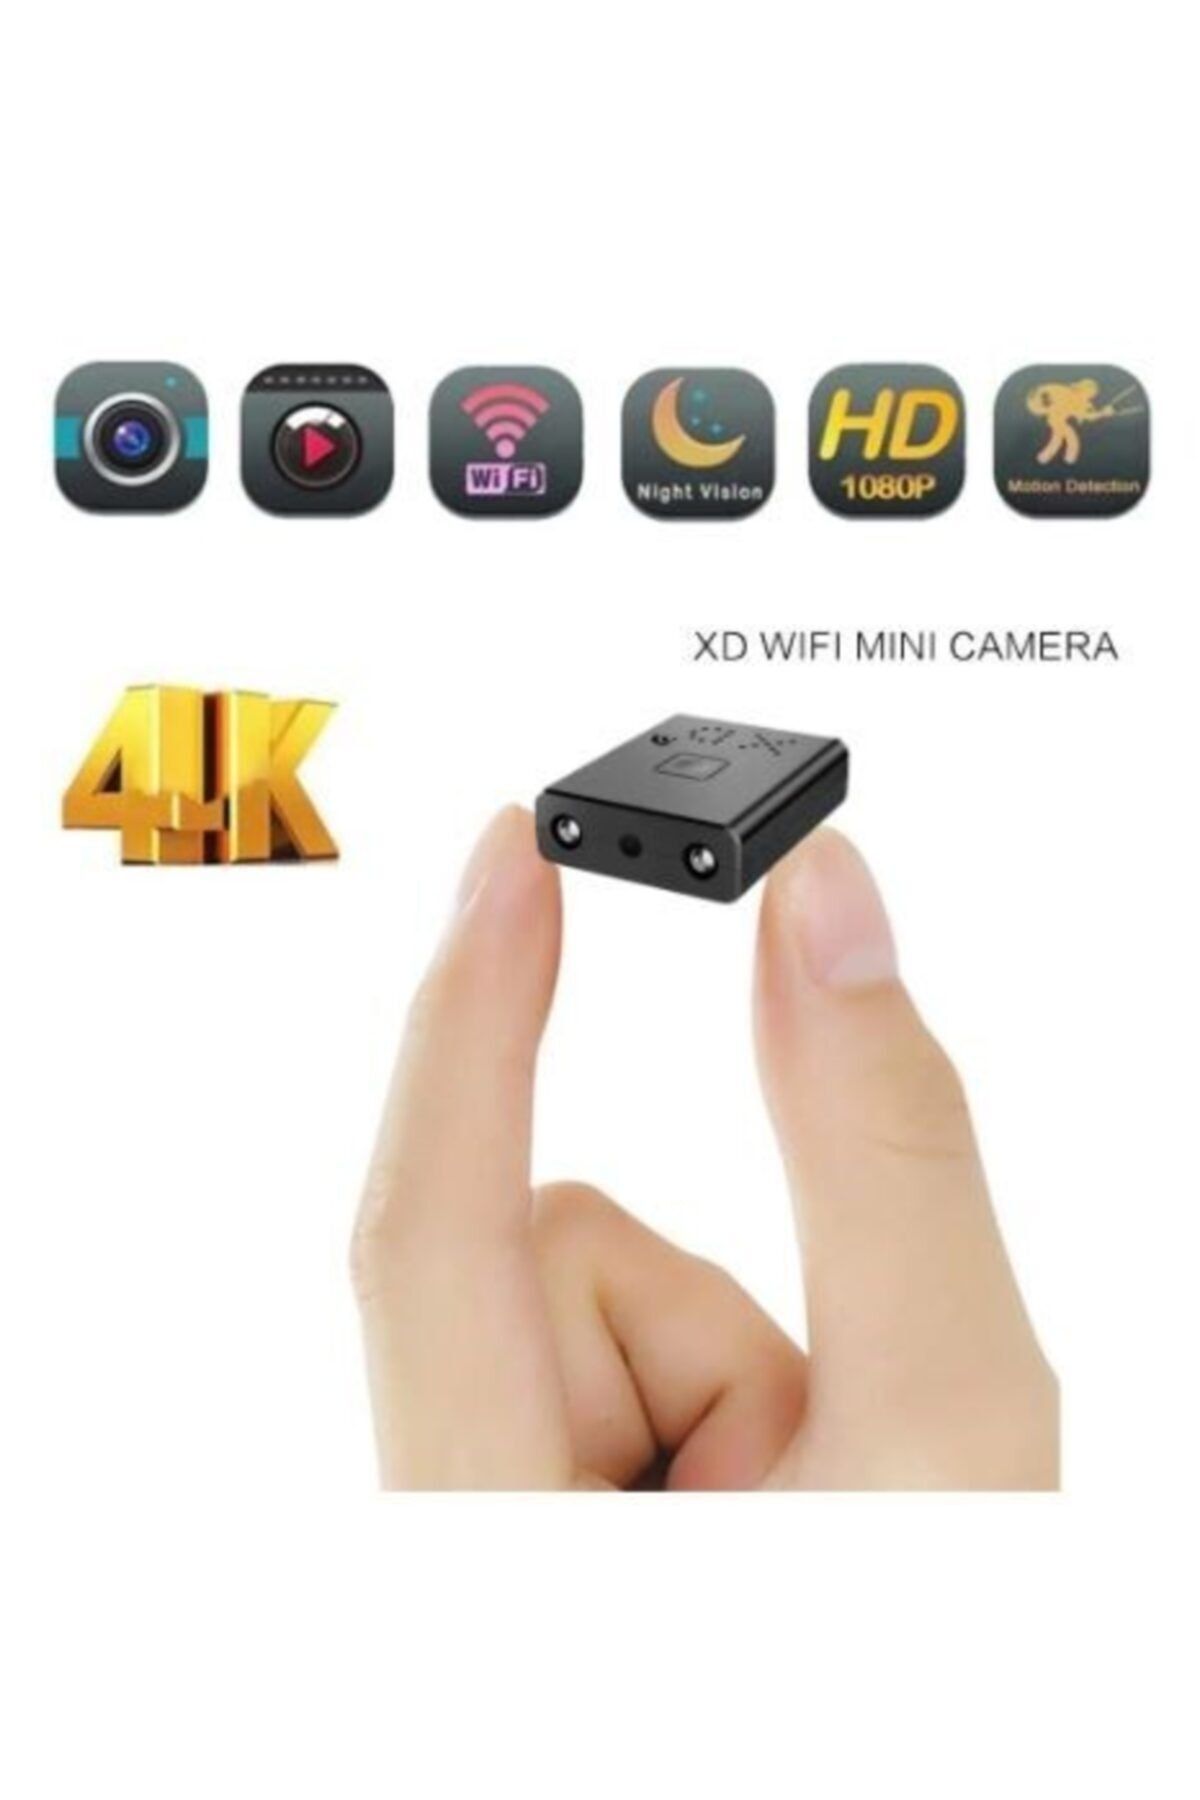 Filonline Xd Wıfı Kamera Full Hd 1080p 4k Ev Güvenlik Gece Görüşlü Sensörlü Mikro Bakıcı Kamerası 1259